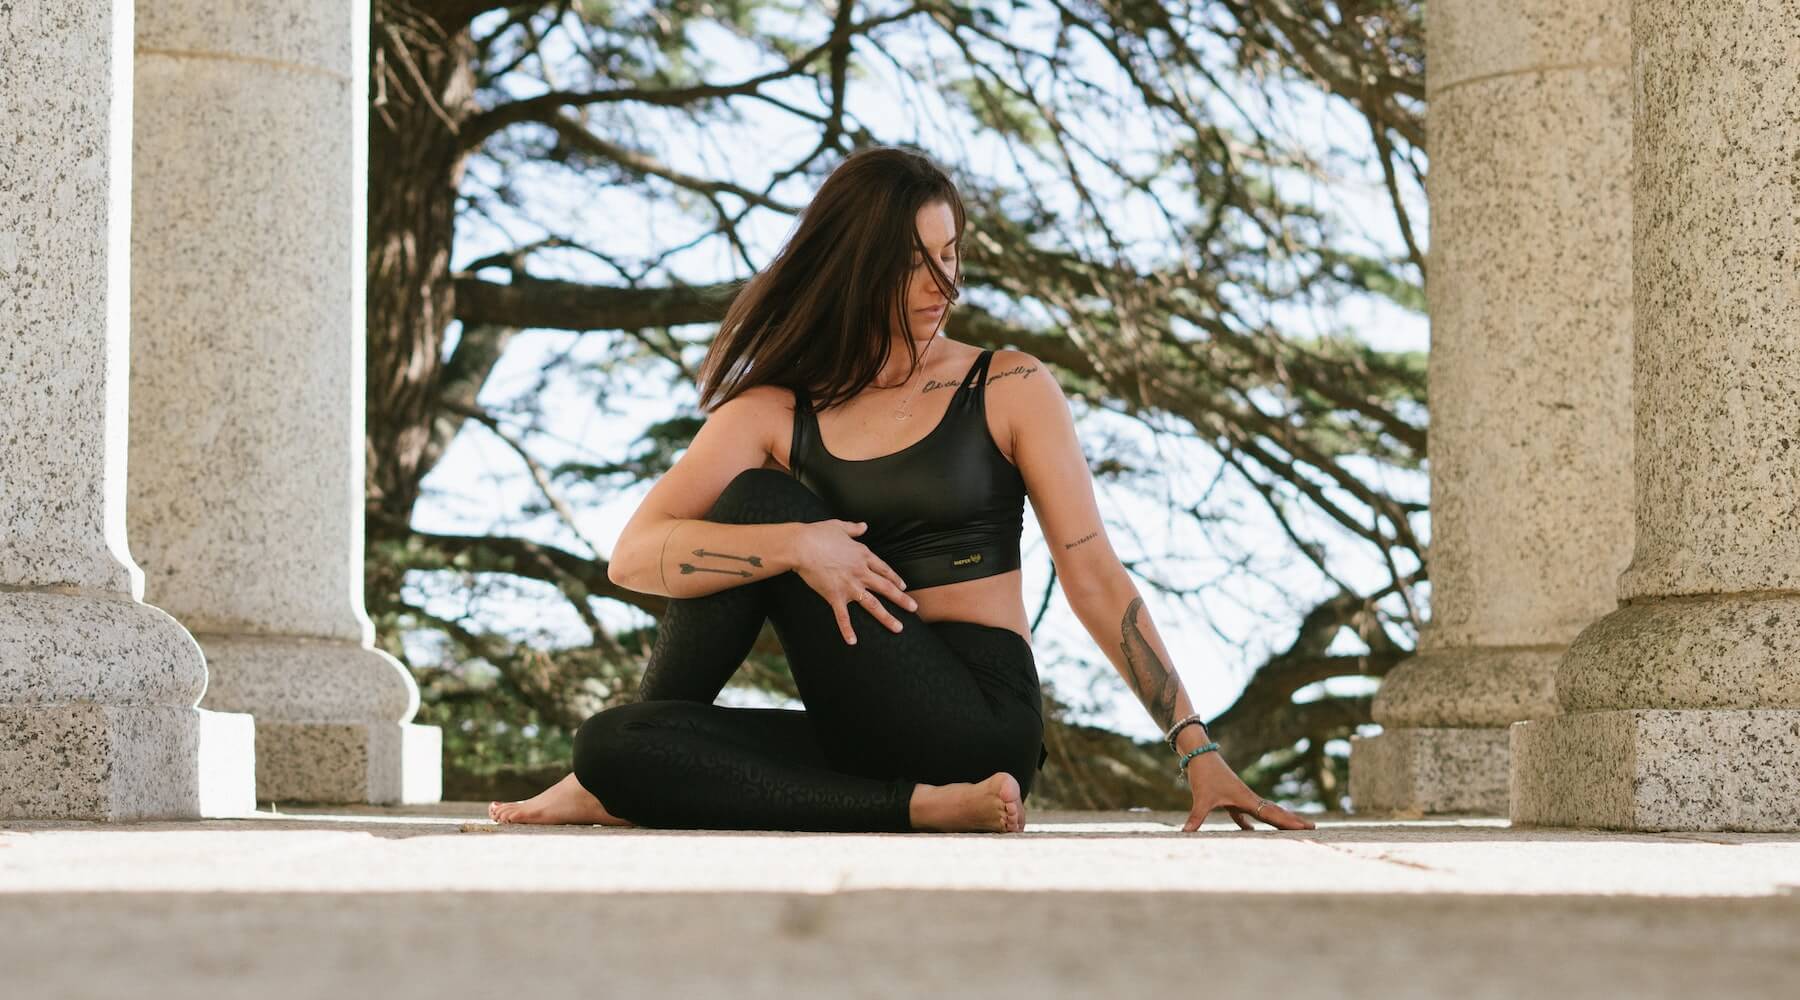 Yogini in a seated twist yoga pose